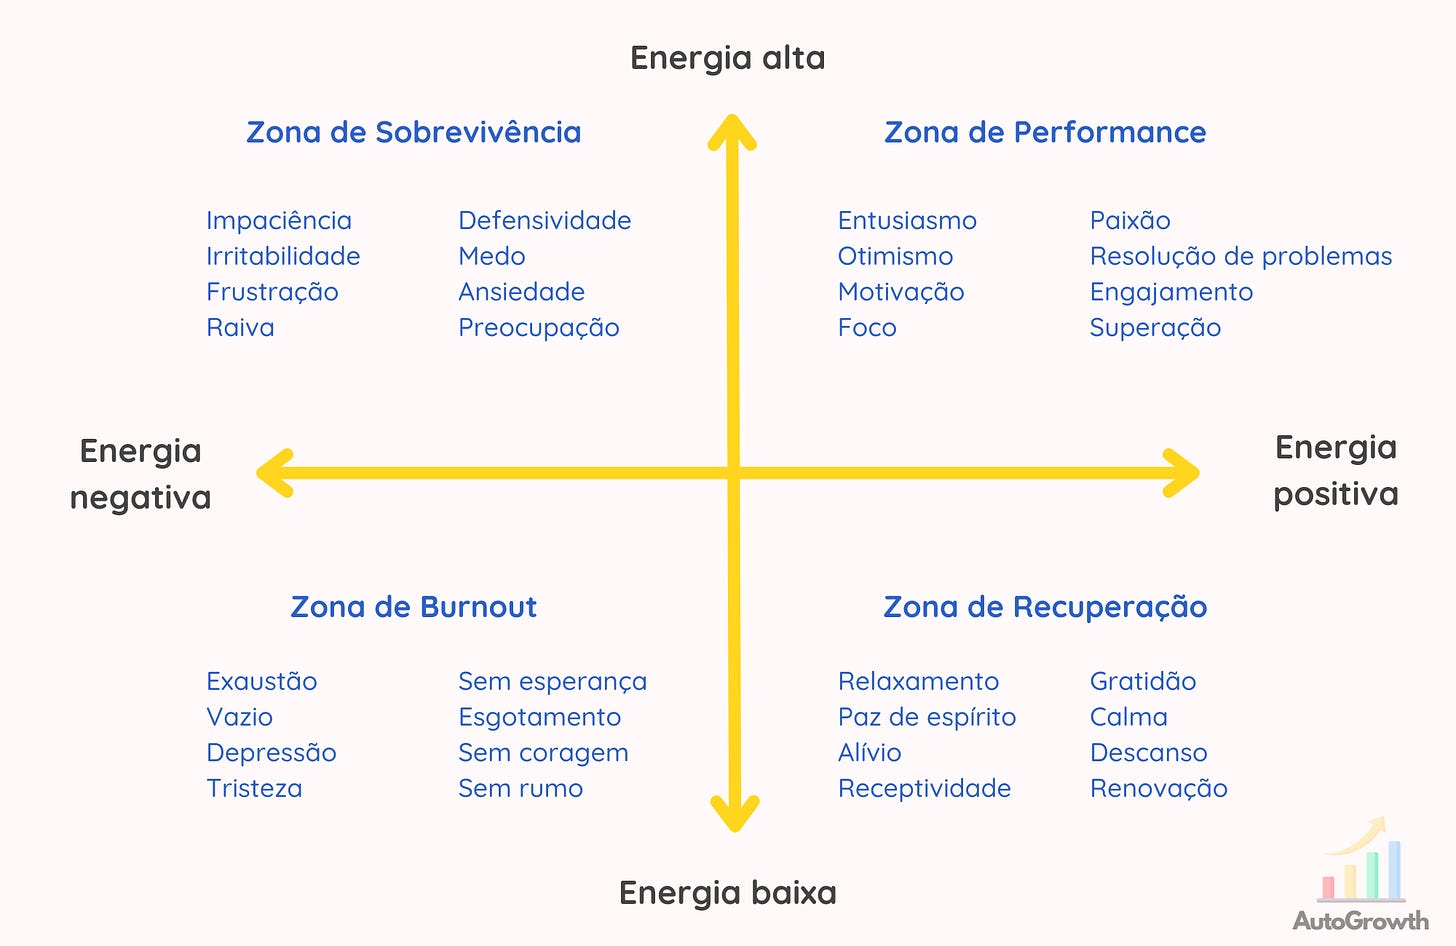 Diagrama que mostra a combinação entre energia alta e baixa, com energia positiva e negativa, gerando a Zona de Performance, Zona de Sobrevivência, Zona de Recuperação e Zona de Burnout